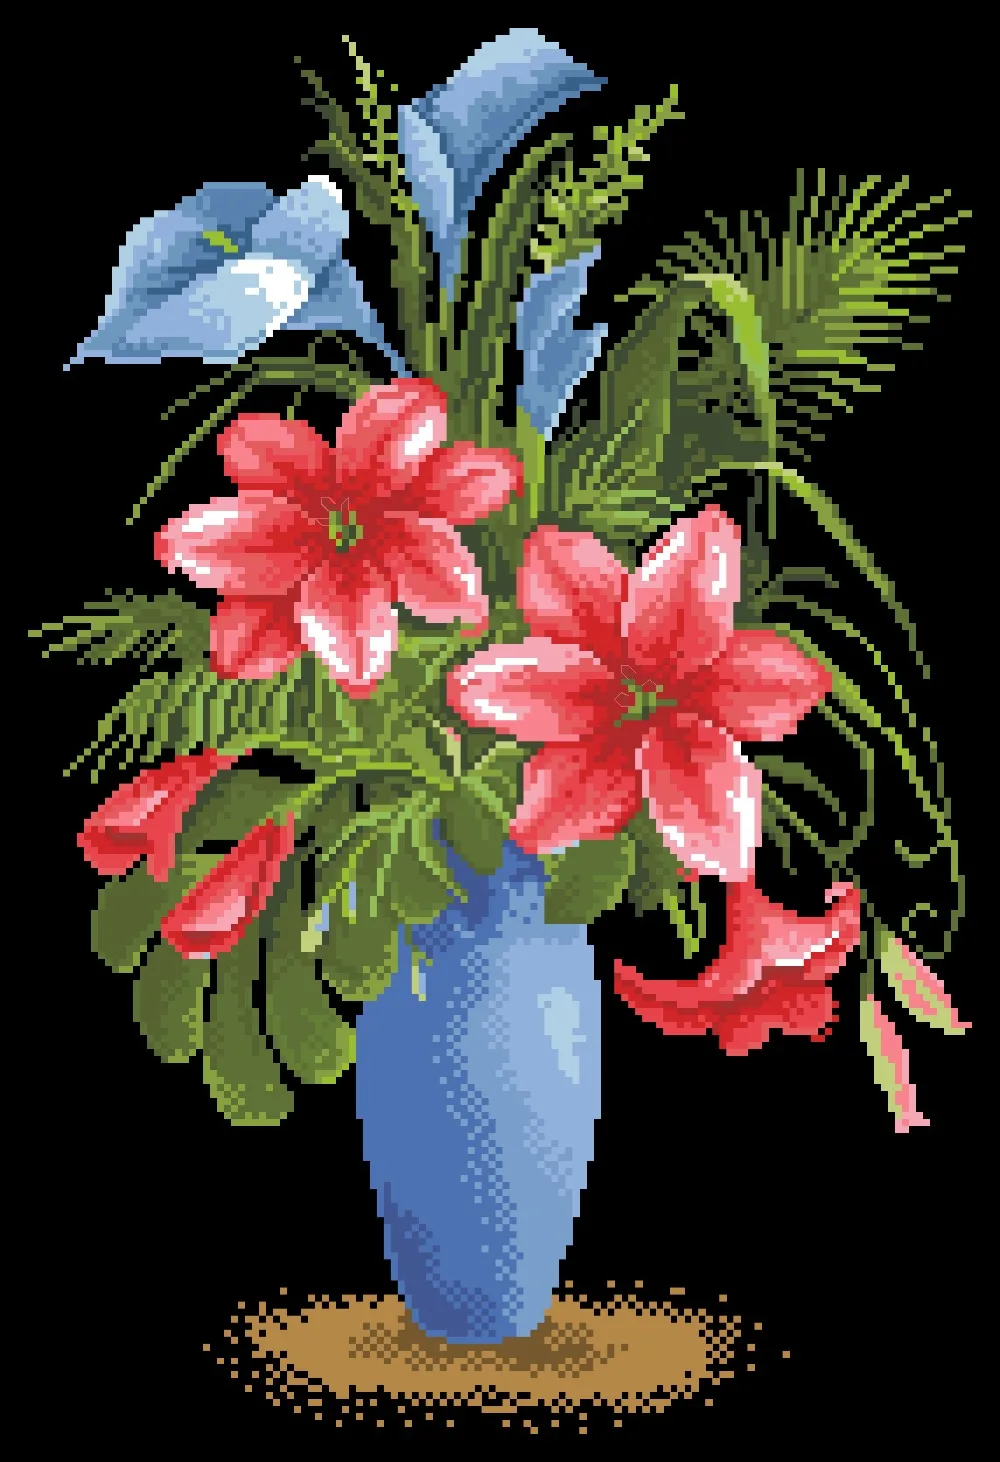 Lily pasakų kryželiu paketo gėlių vaza rinkiniai aida 18ct 14ct 11ct juoda medžiaga žmonės rinkinys siuvinėjimui 